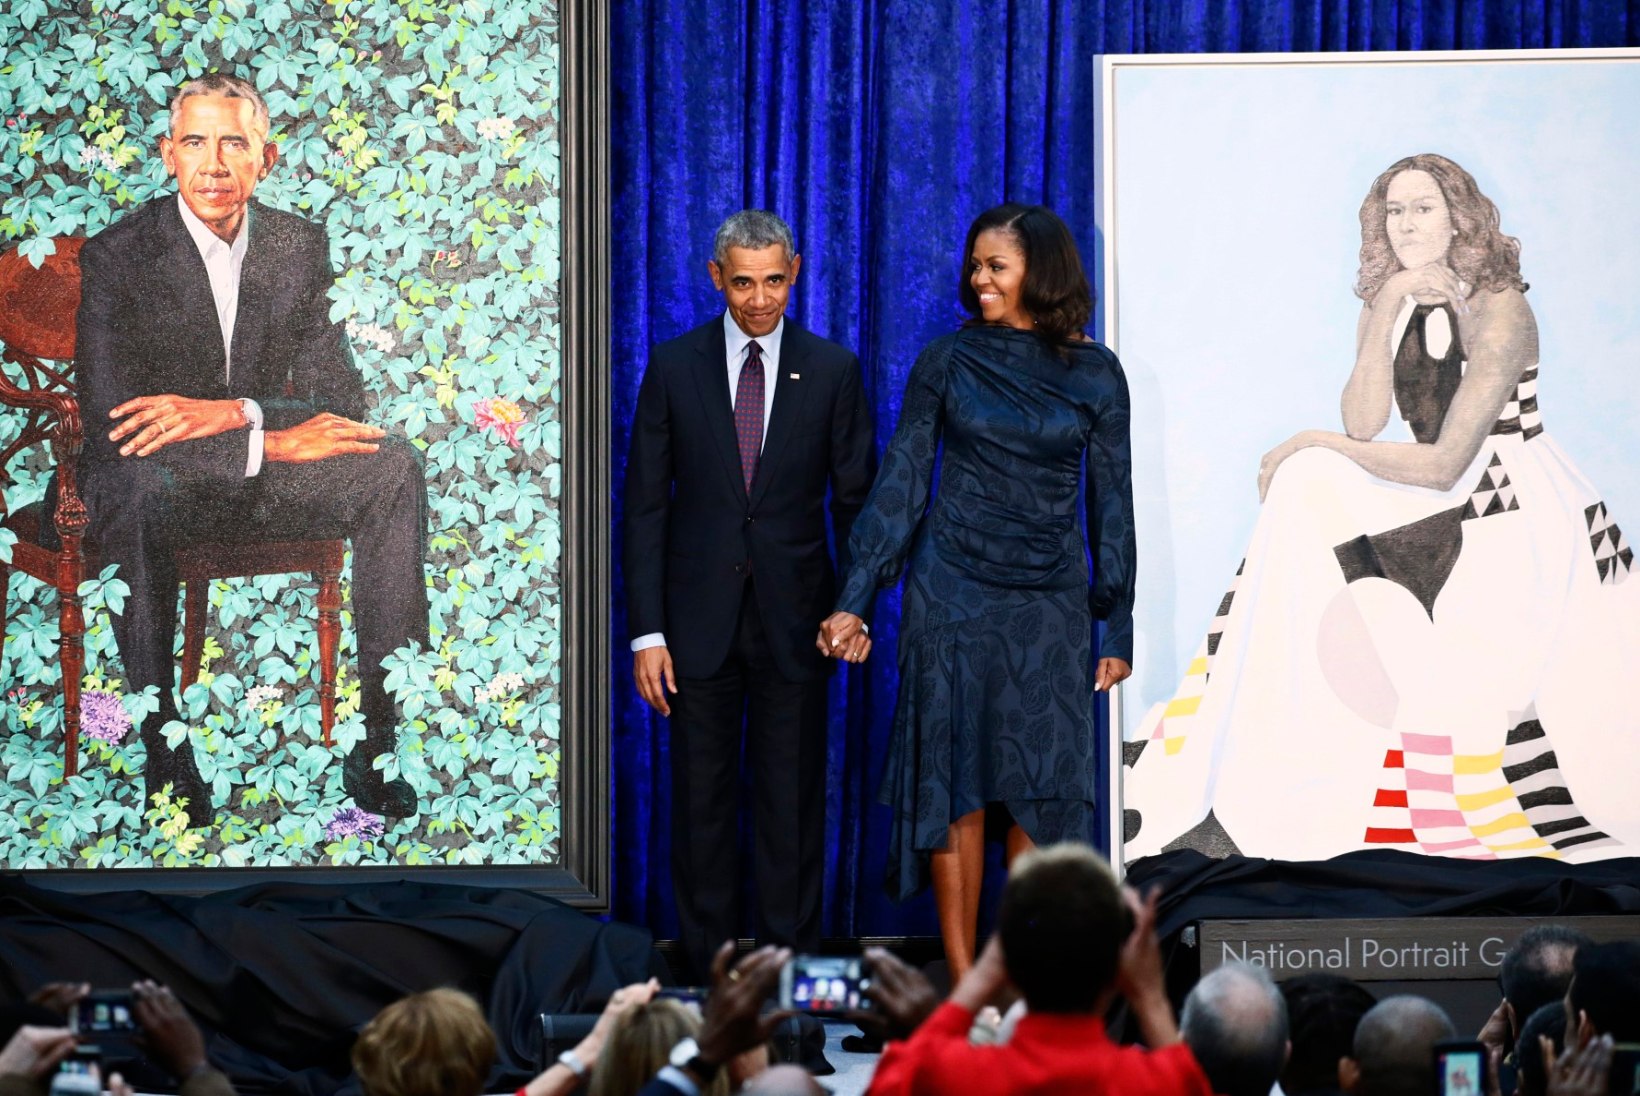 FOTOD | USA rahvuslikus portreegaleriis esitleti Michelle ja Barack Obamast valminud maale